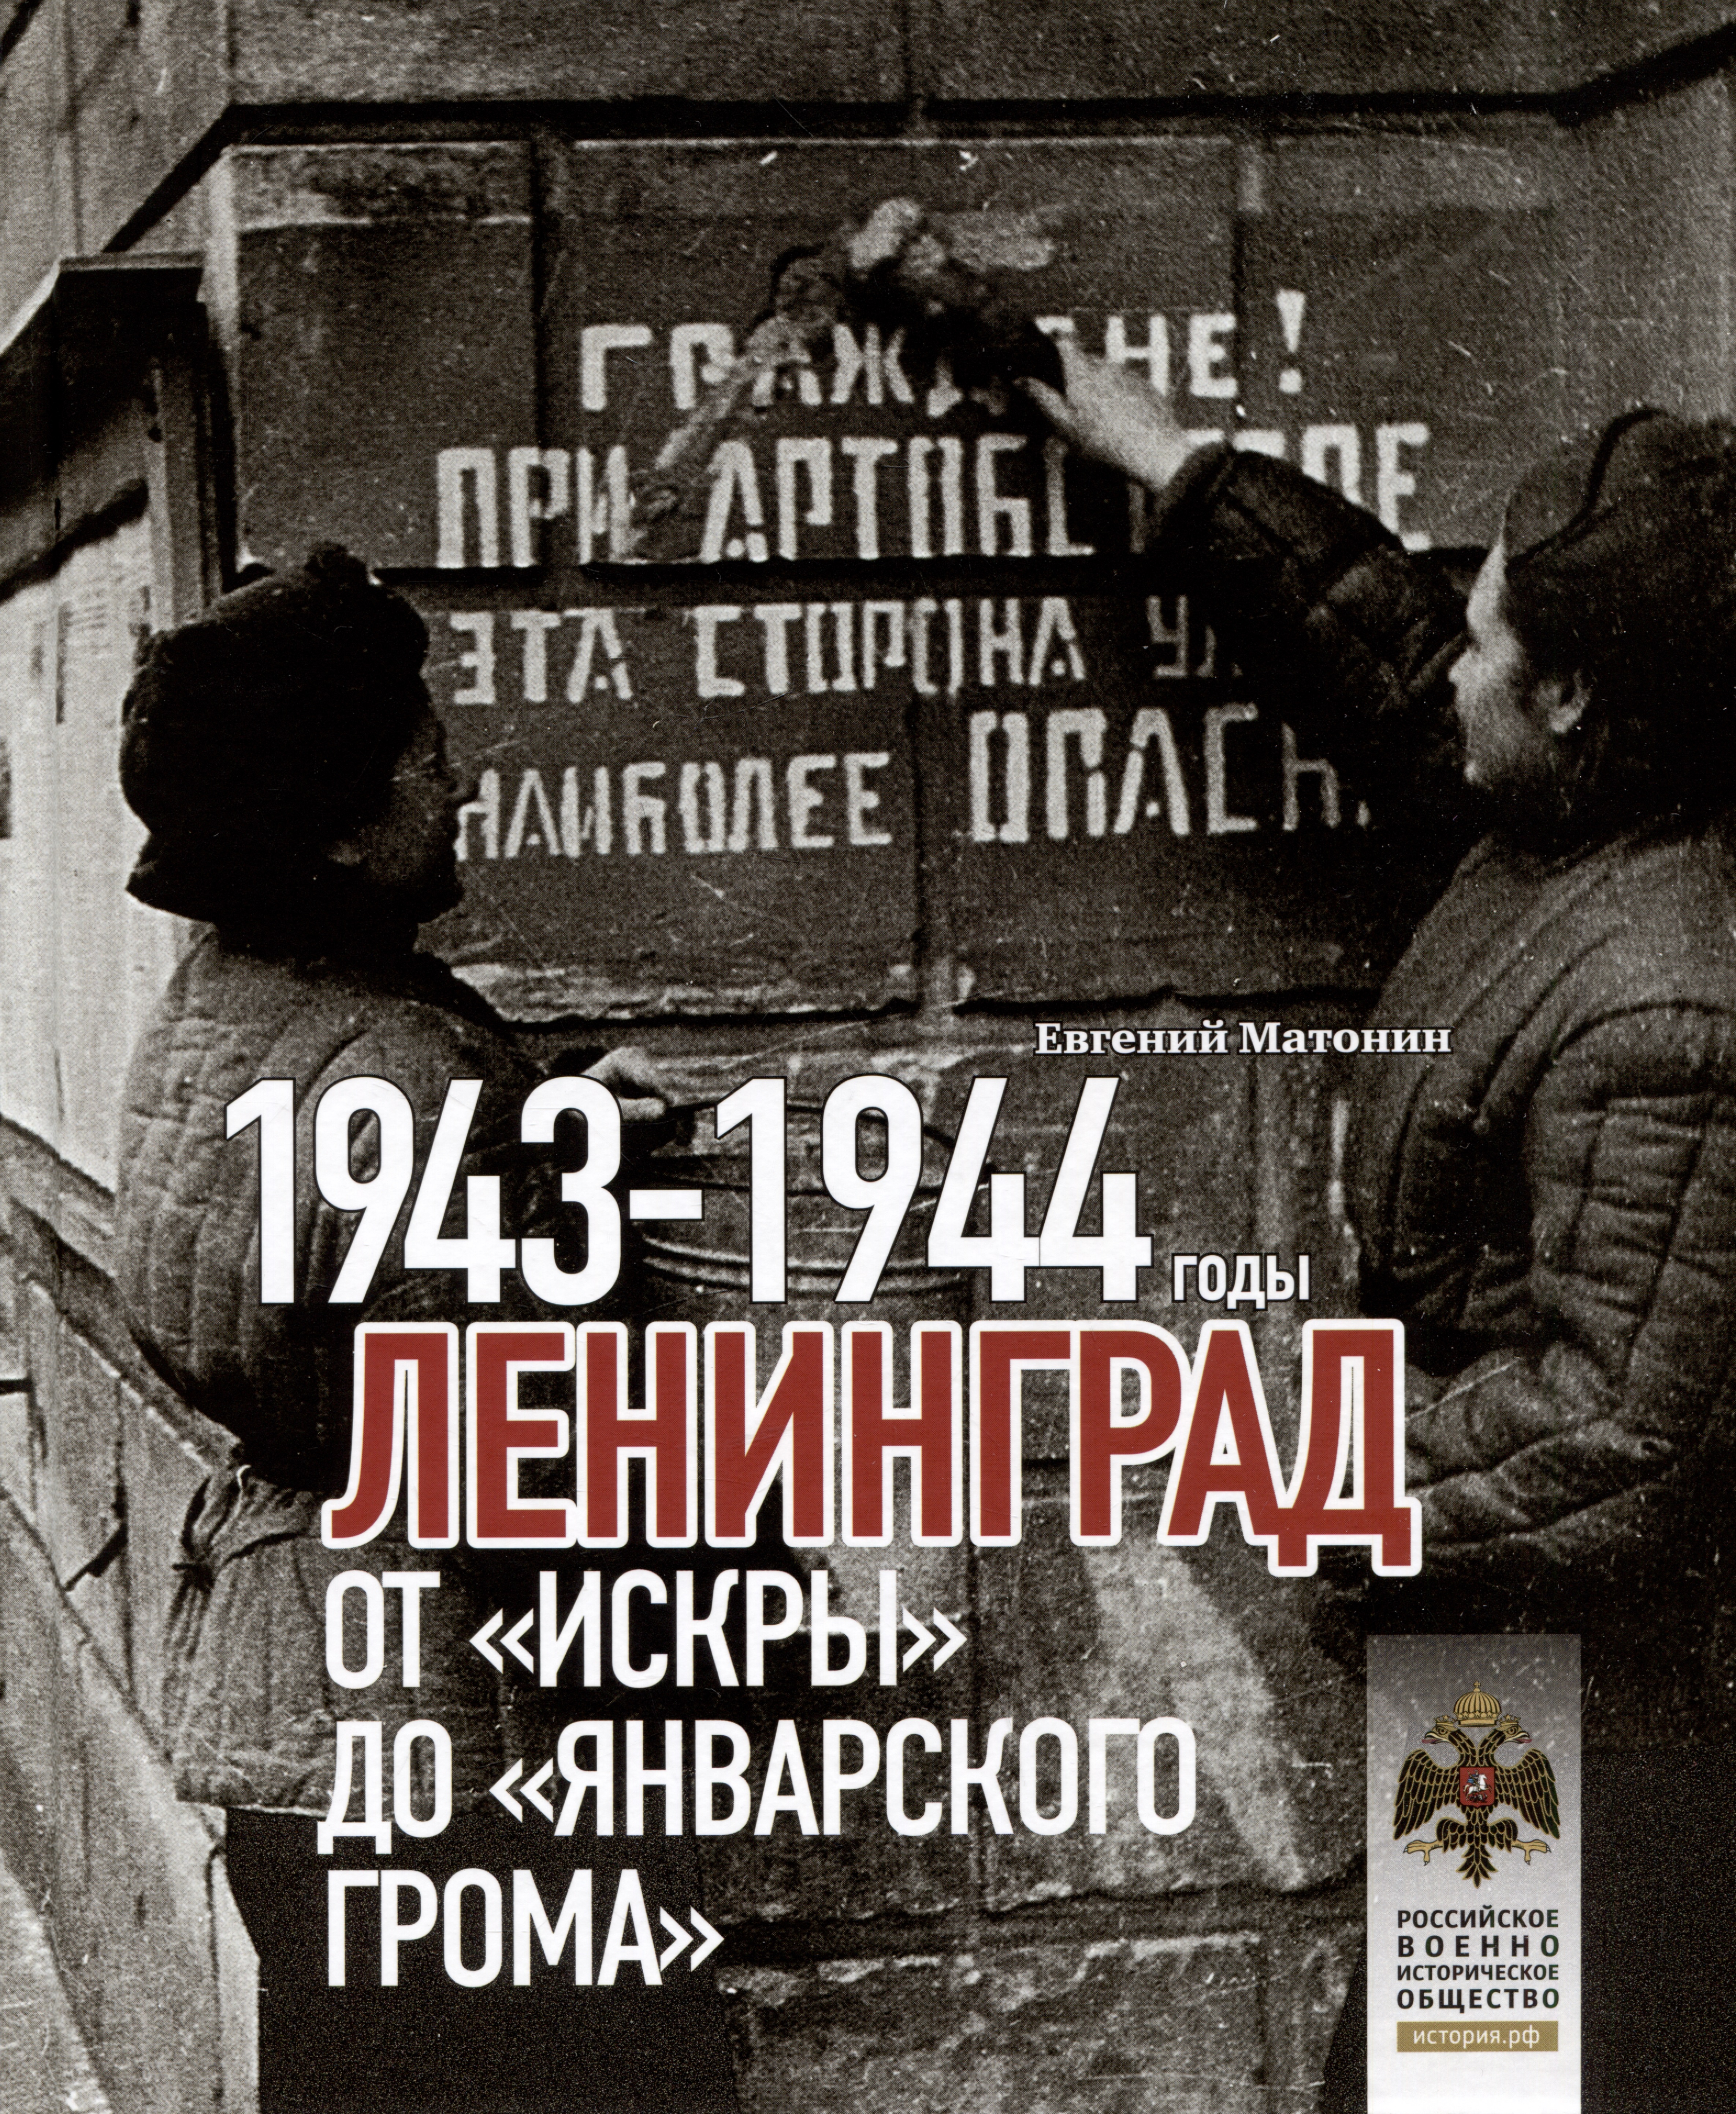 Ленинград. От "Искры" до "Январского грома". 1943-1944 гг.